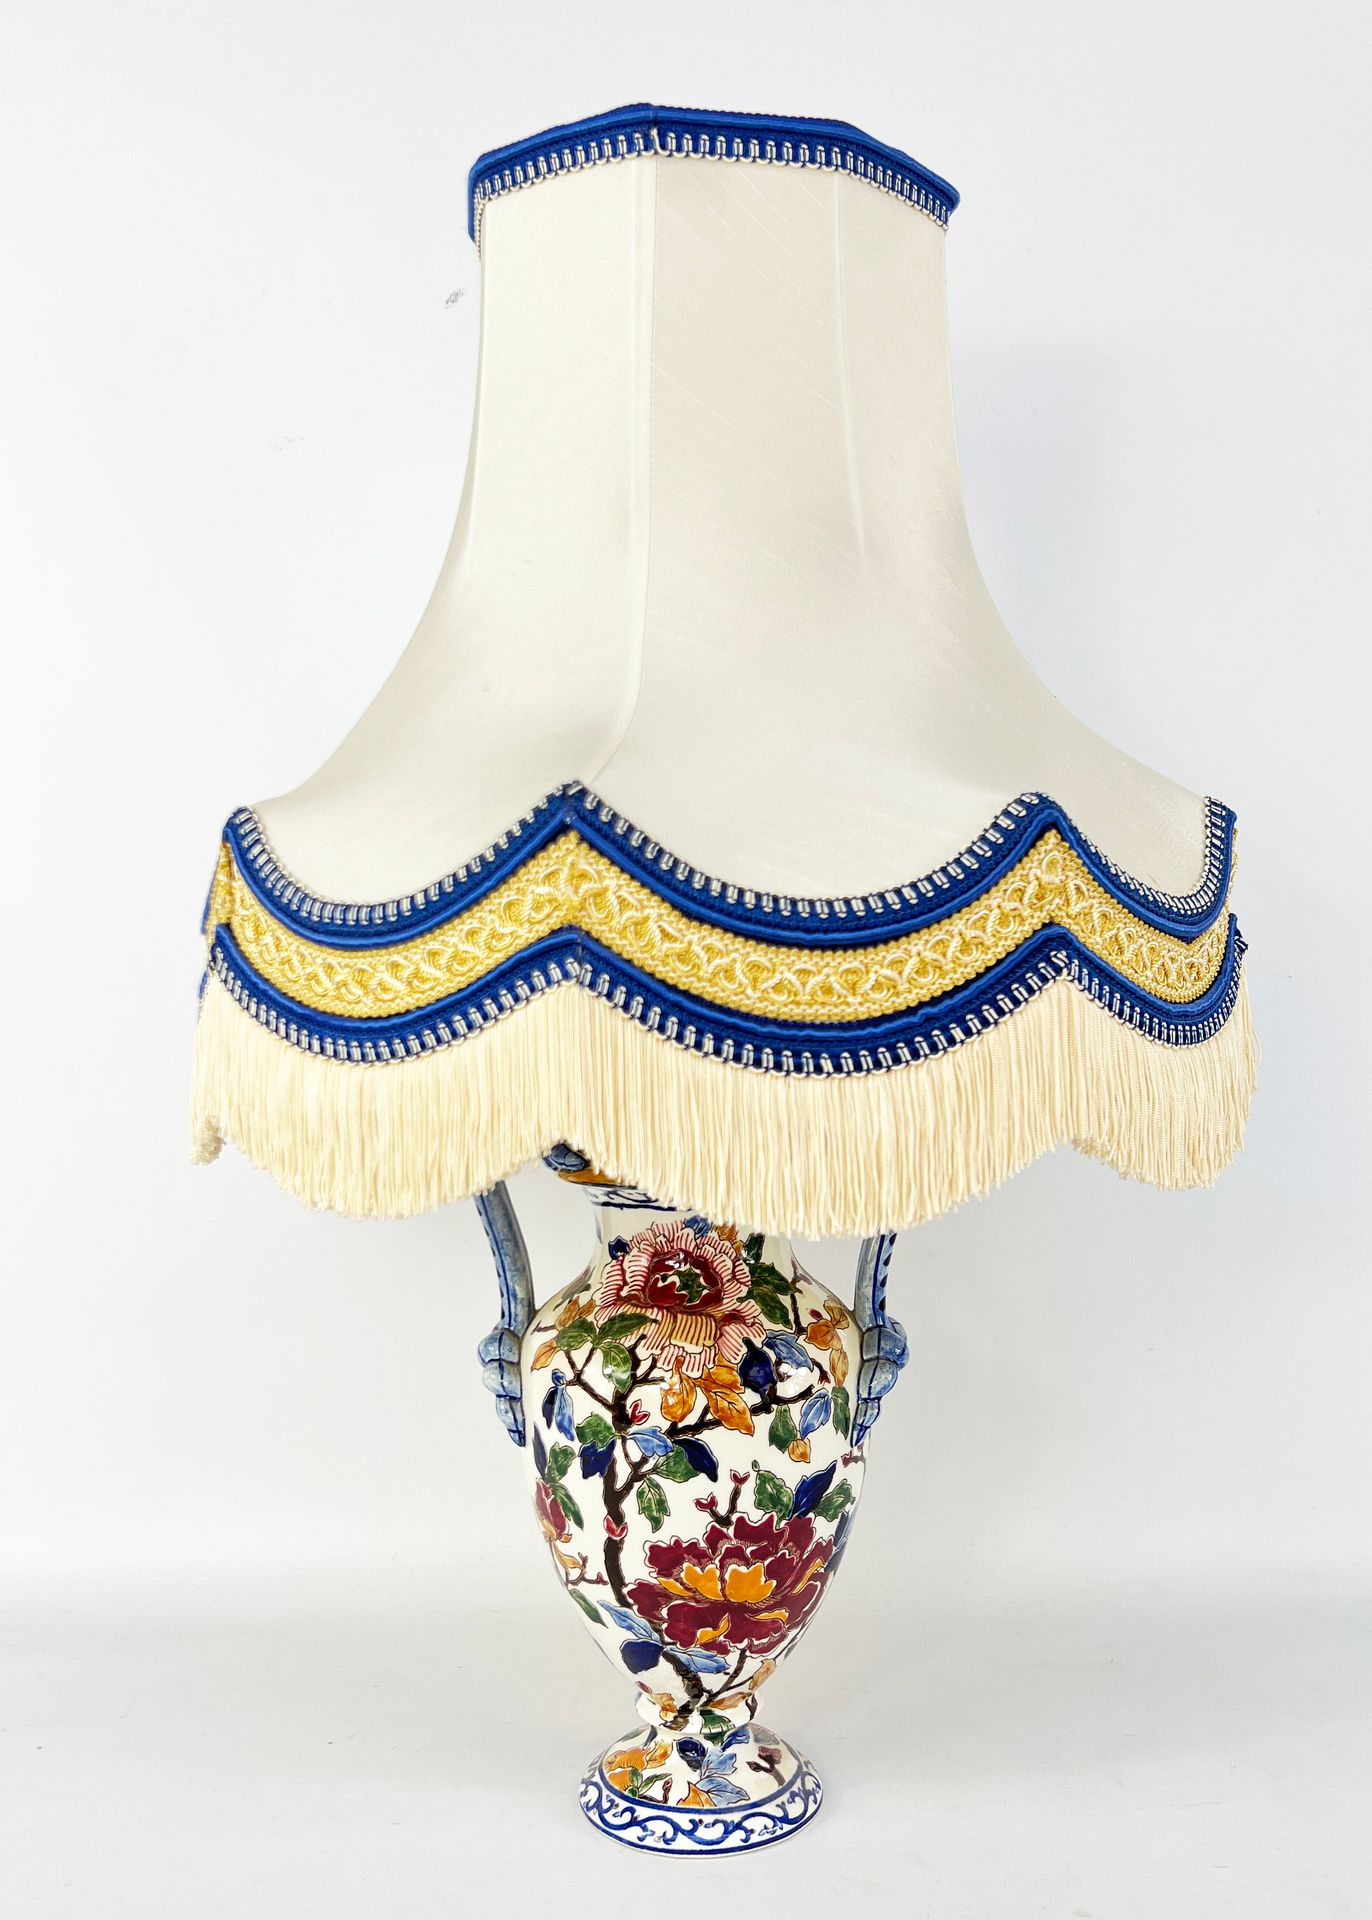 Null GIEN

带有牡丹花的釉面陶器灯架及其灯罩。

总高度：58厘米

灯座的高度：38厘米